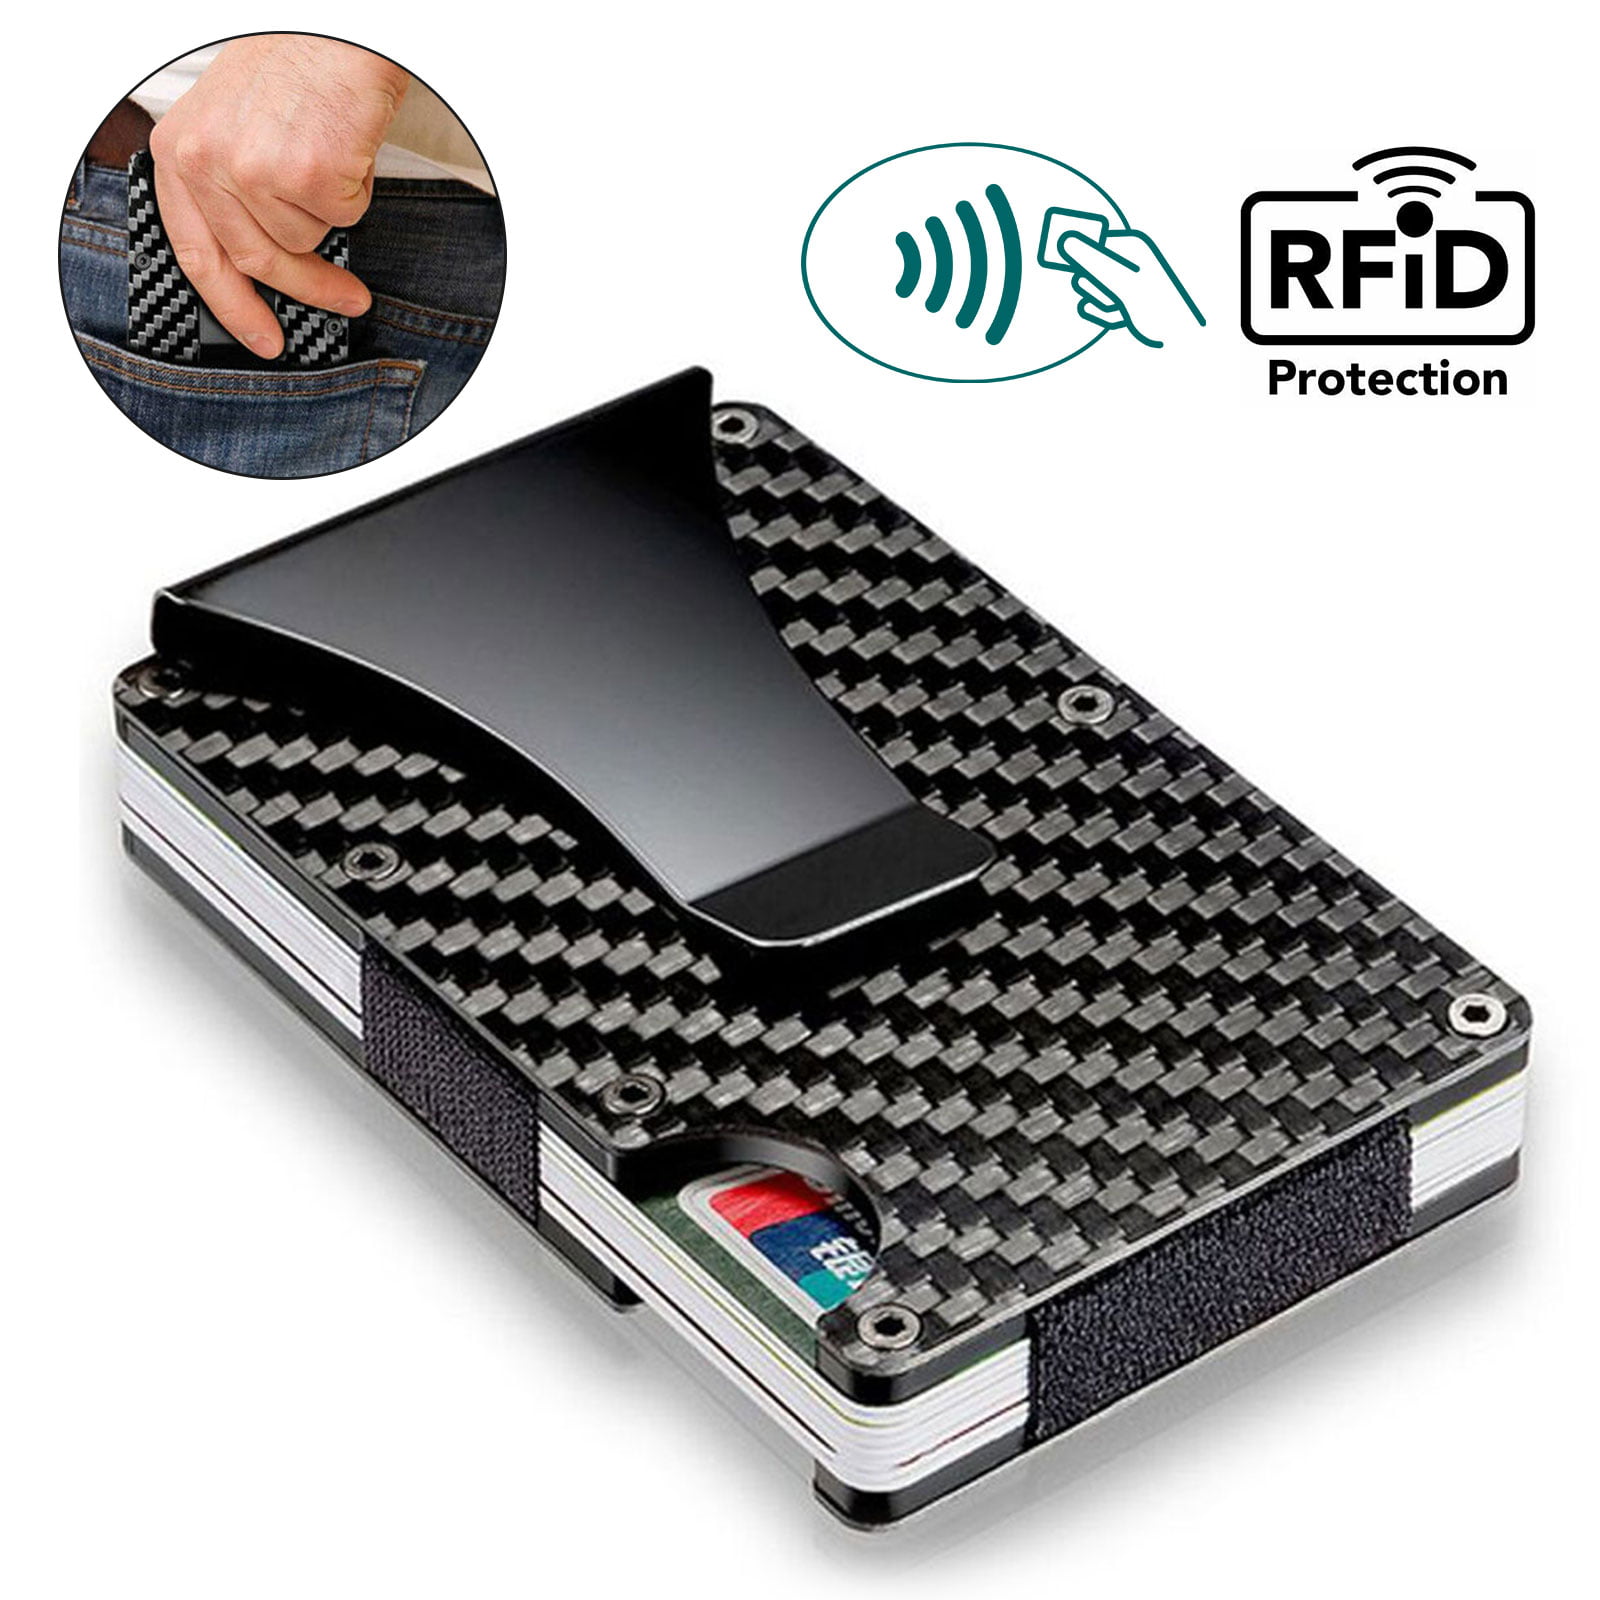 Carbon Wallet Carbon Fiber Money Clip RFID Blocking Front Pocket Wallet Metal Wallet Minimalist Carbon Fiber Slim Wallet Credit Card Holder for Men